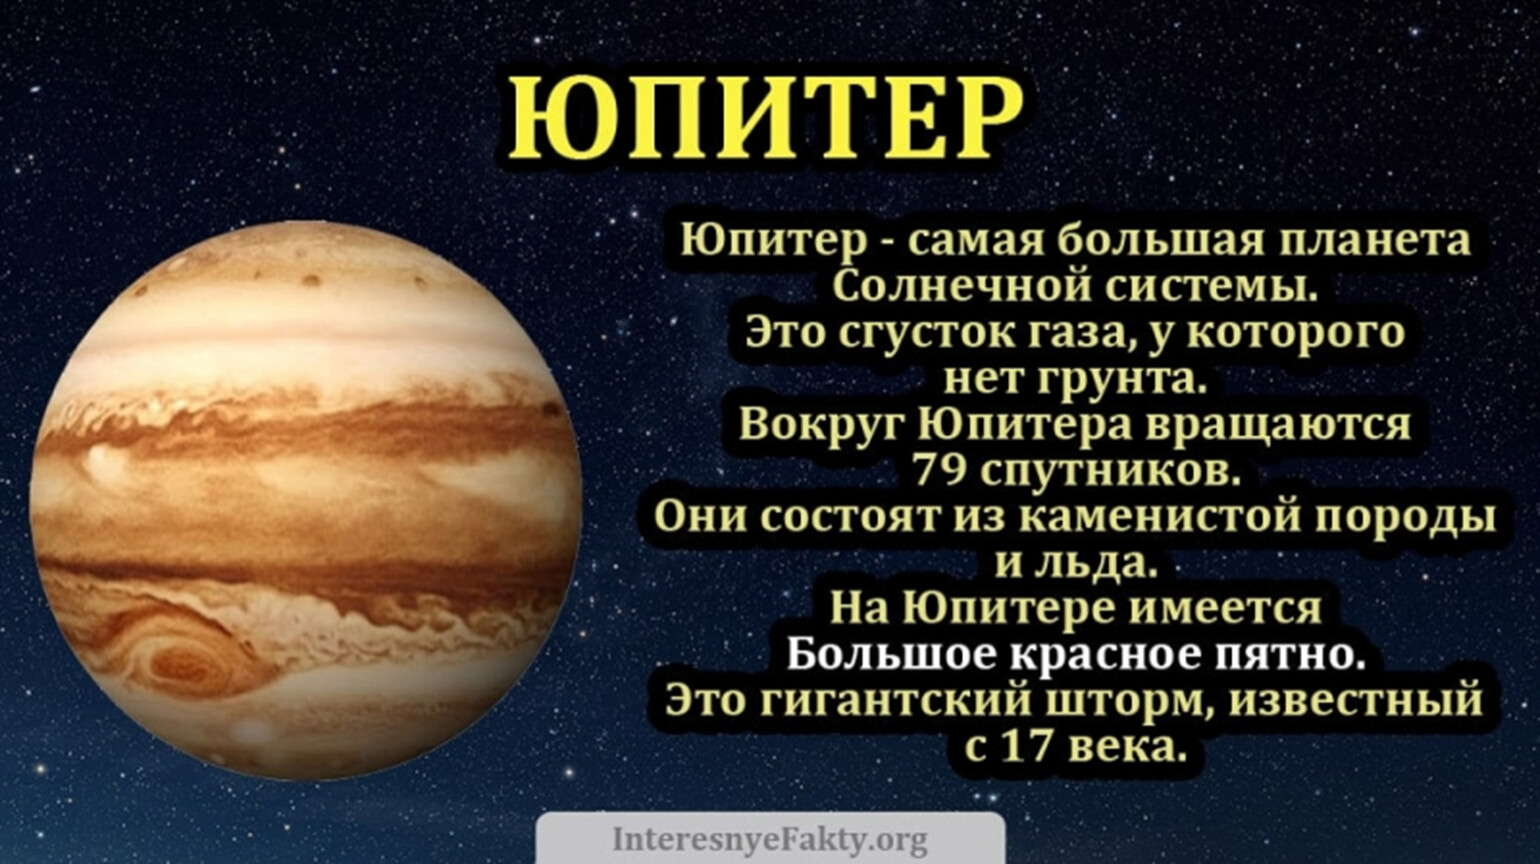 Юпитер факты о планете